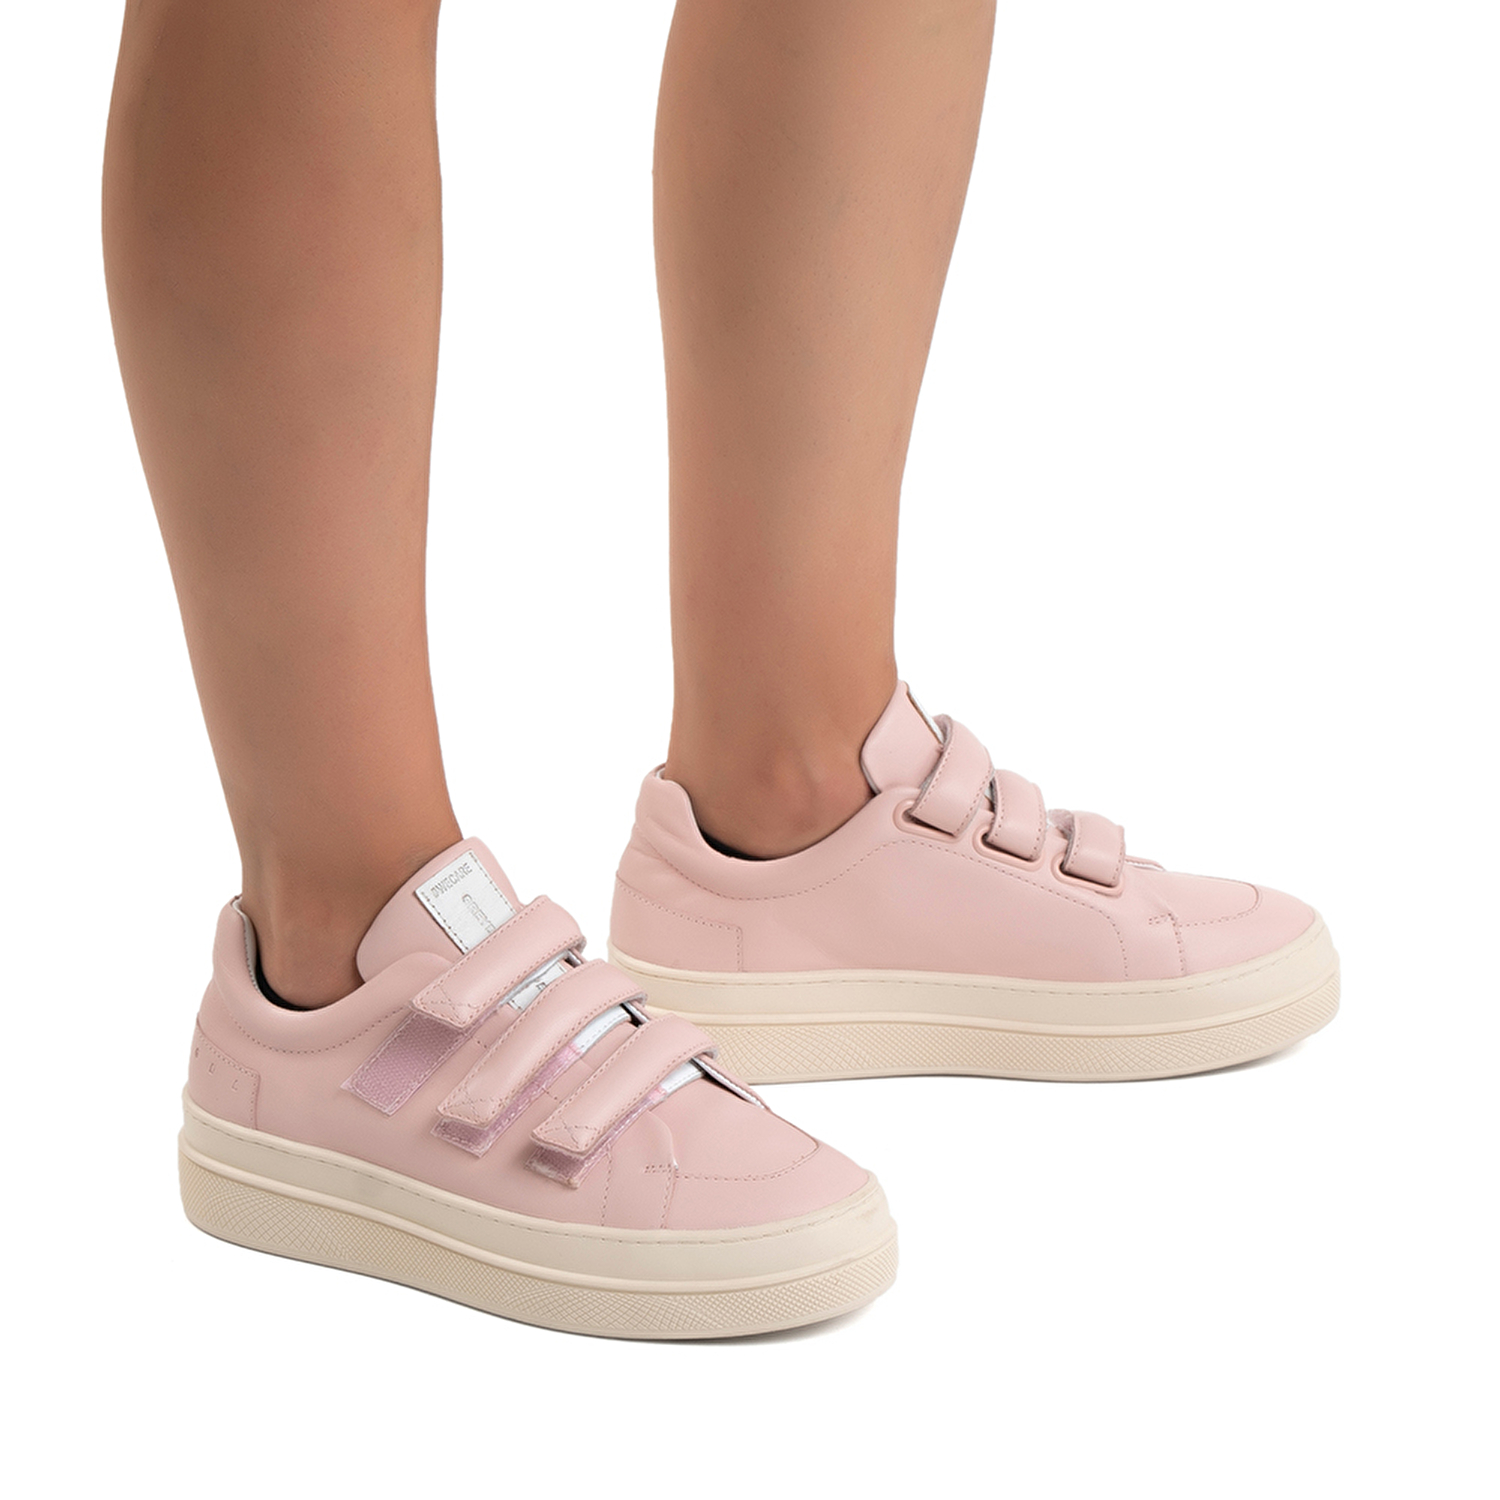 GreyderLAB Kadın Pembe Hakiki Deri Sneaker Ayakkabı GL22178-2